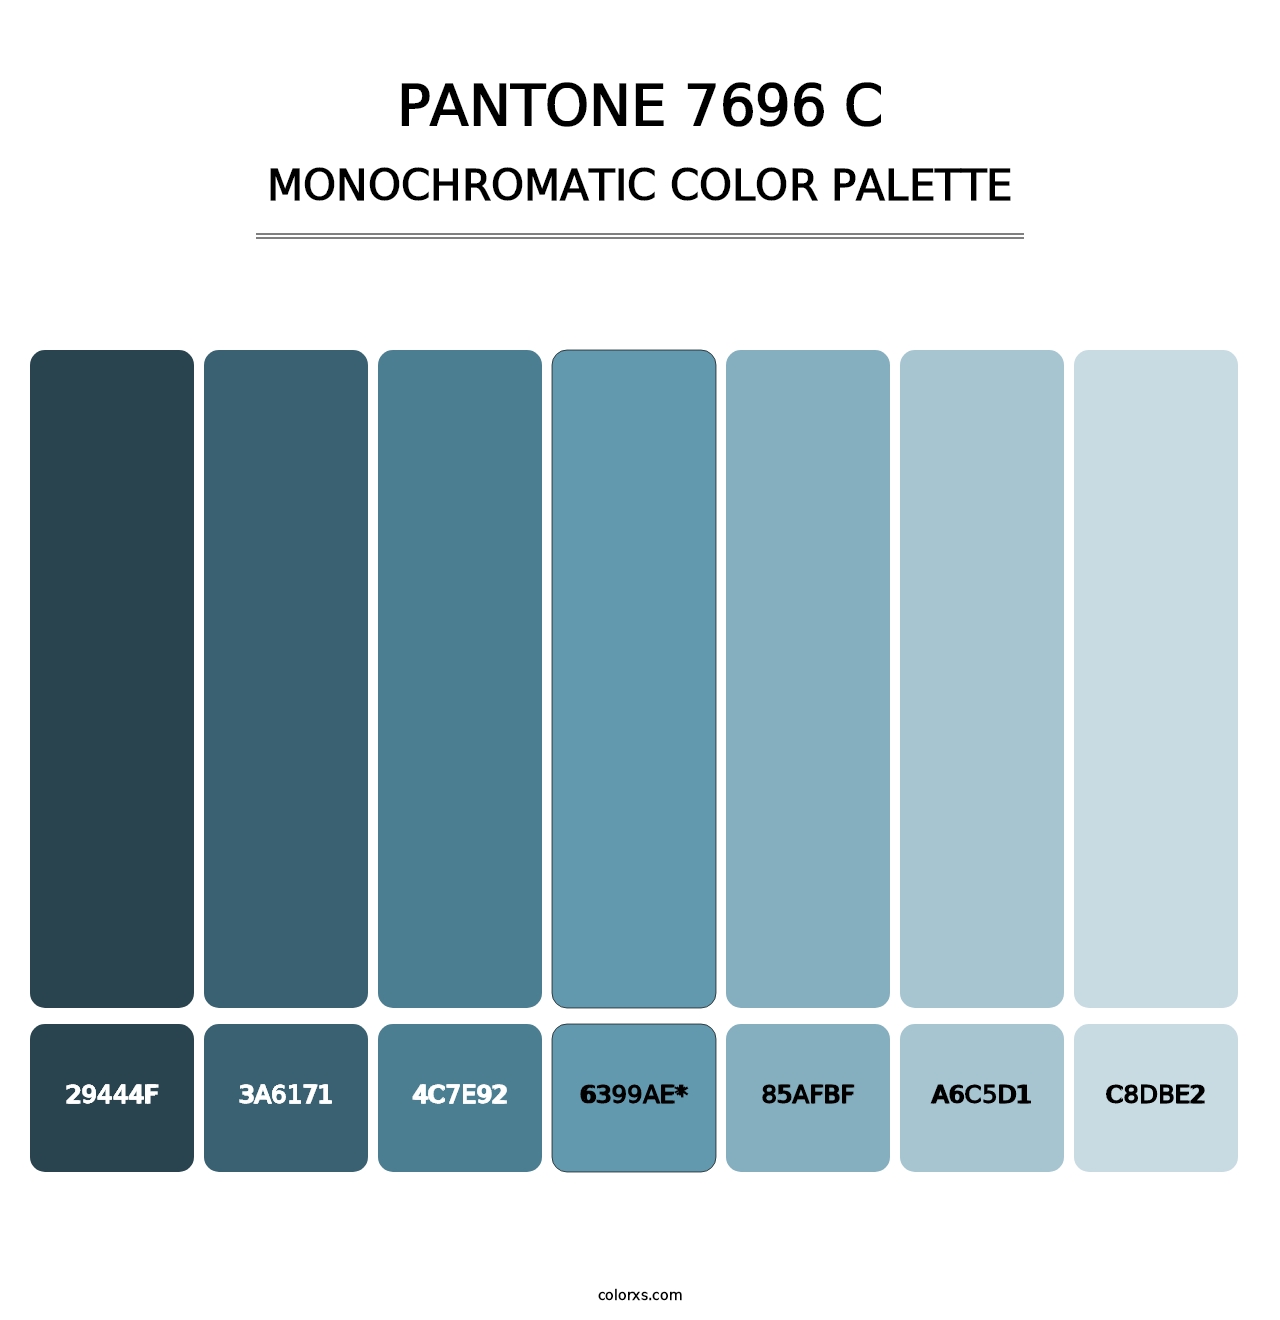 PANTONE 7696 C - Monochromatic Color Palette